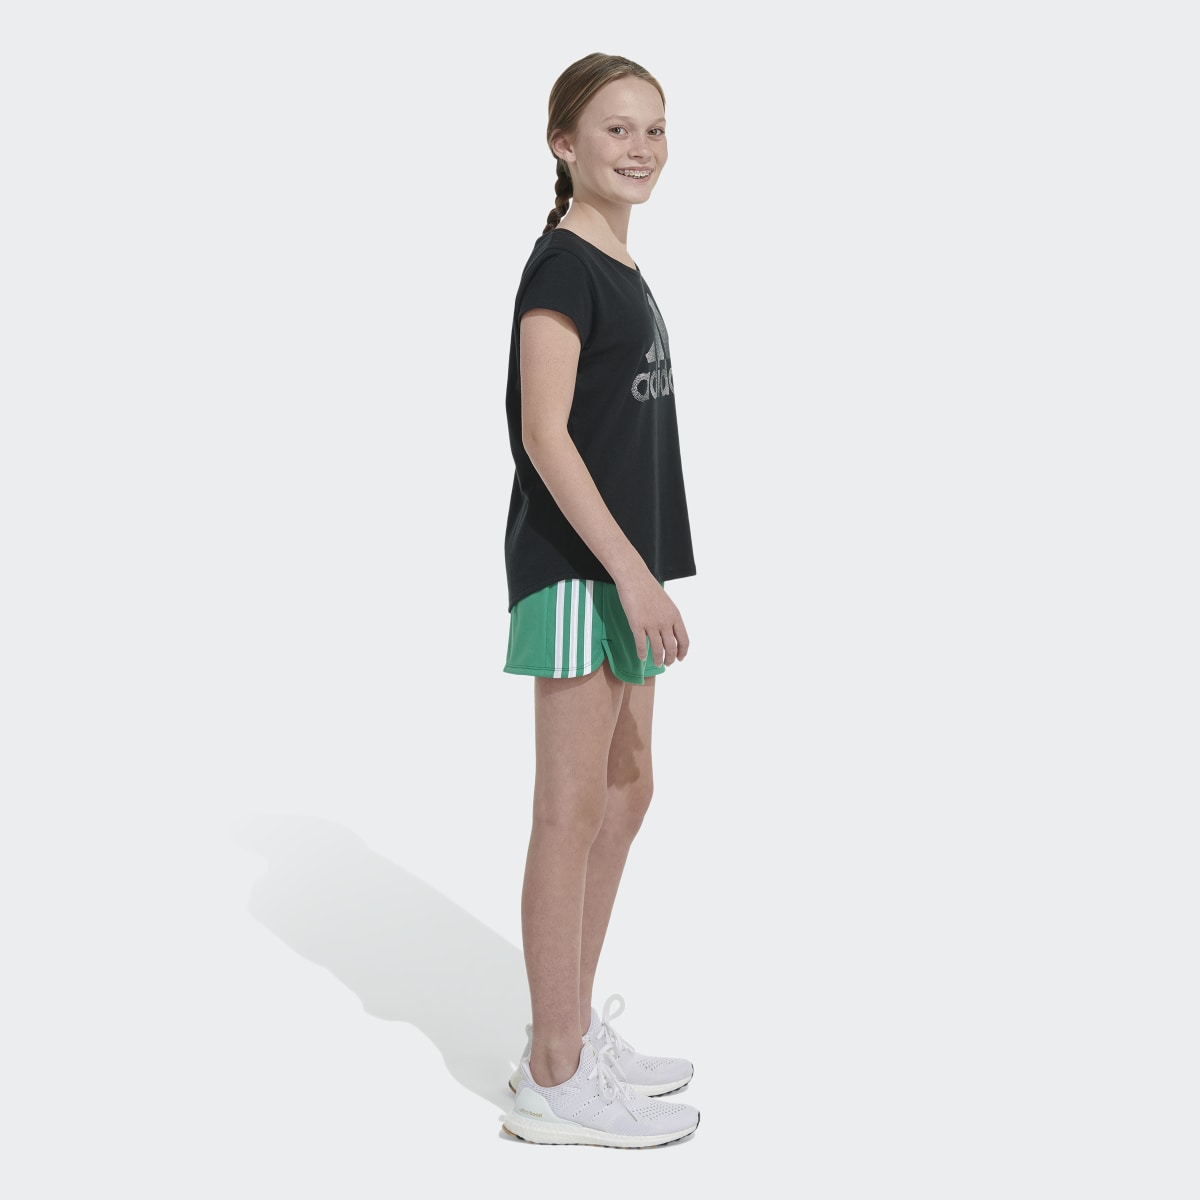 Adidas 3-Stripes Mesh Shorts. 6